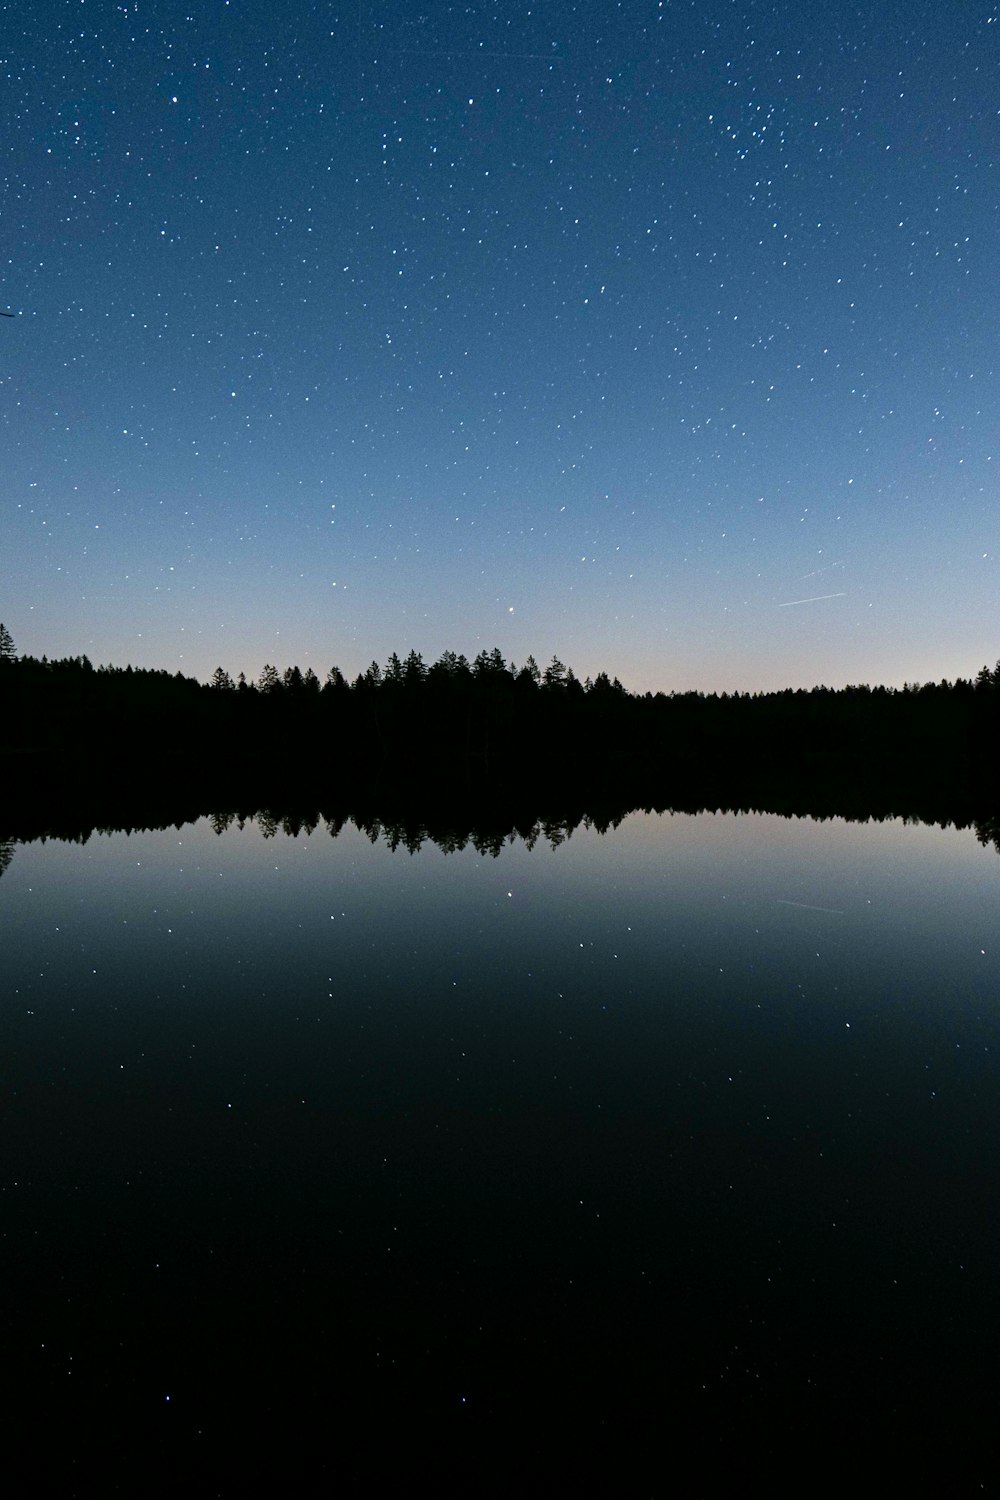 El cielo nocturno se refleja en el agua quieta de un lago